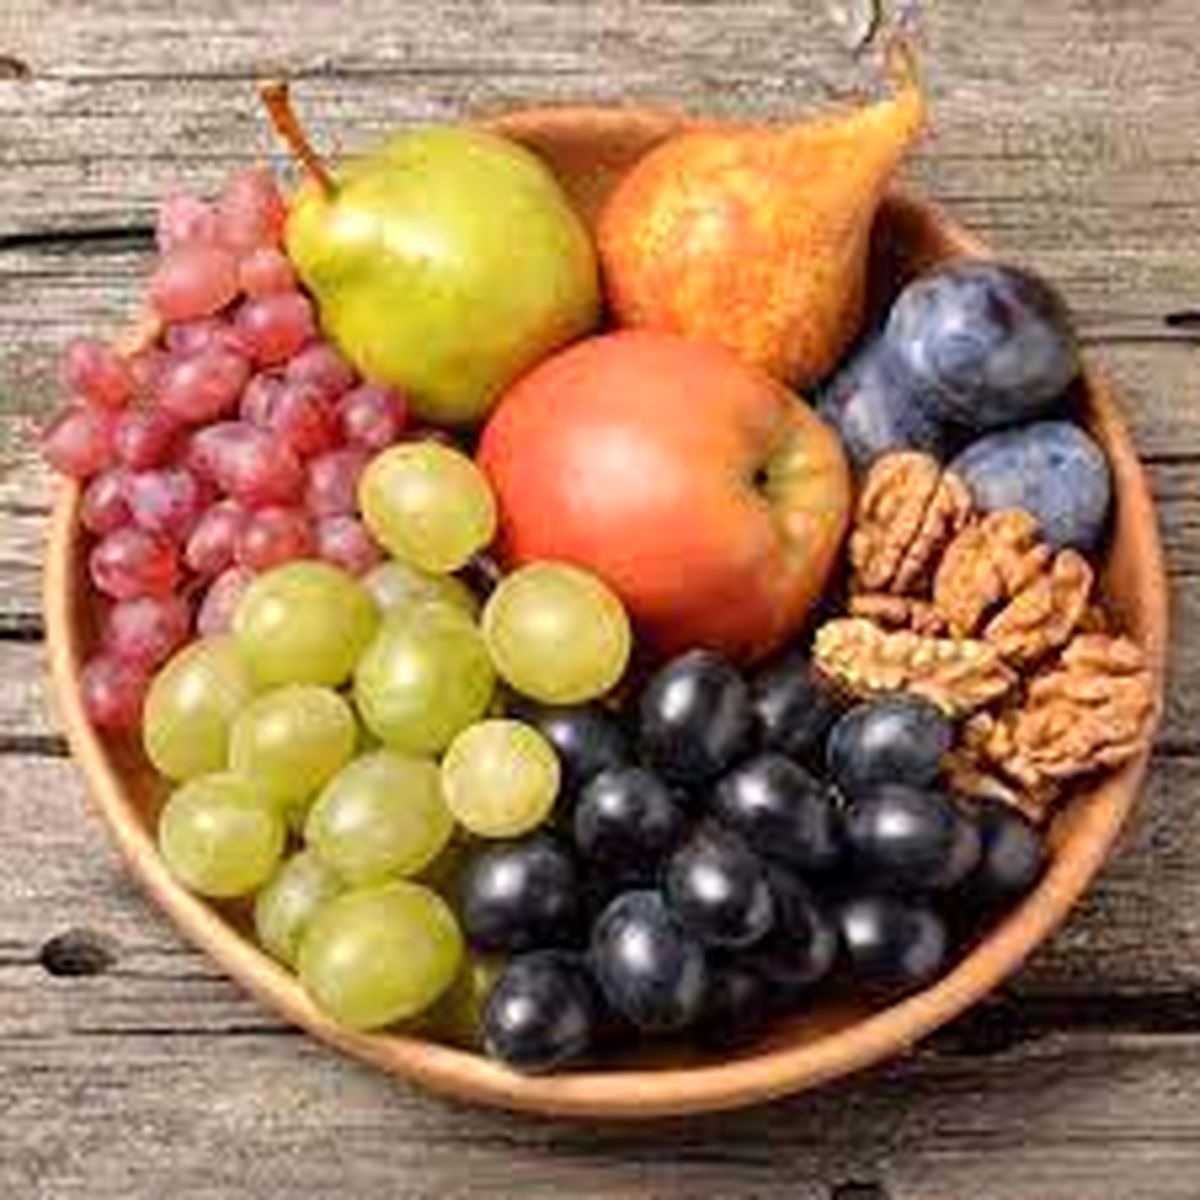 بیماران مبتلا به میکروب معده چه میوه هایی بخورند؟